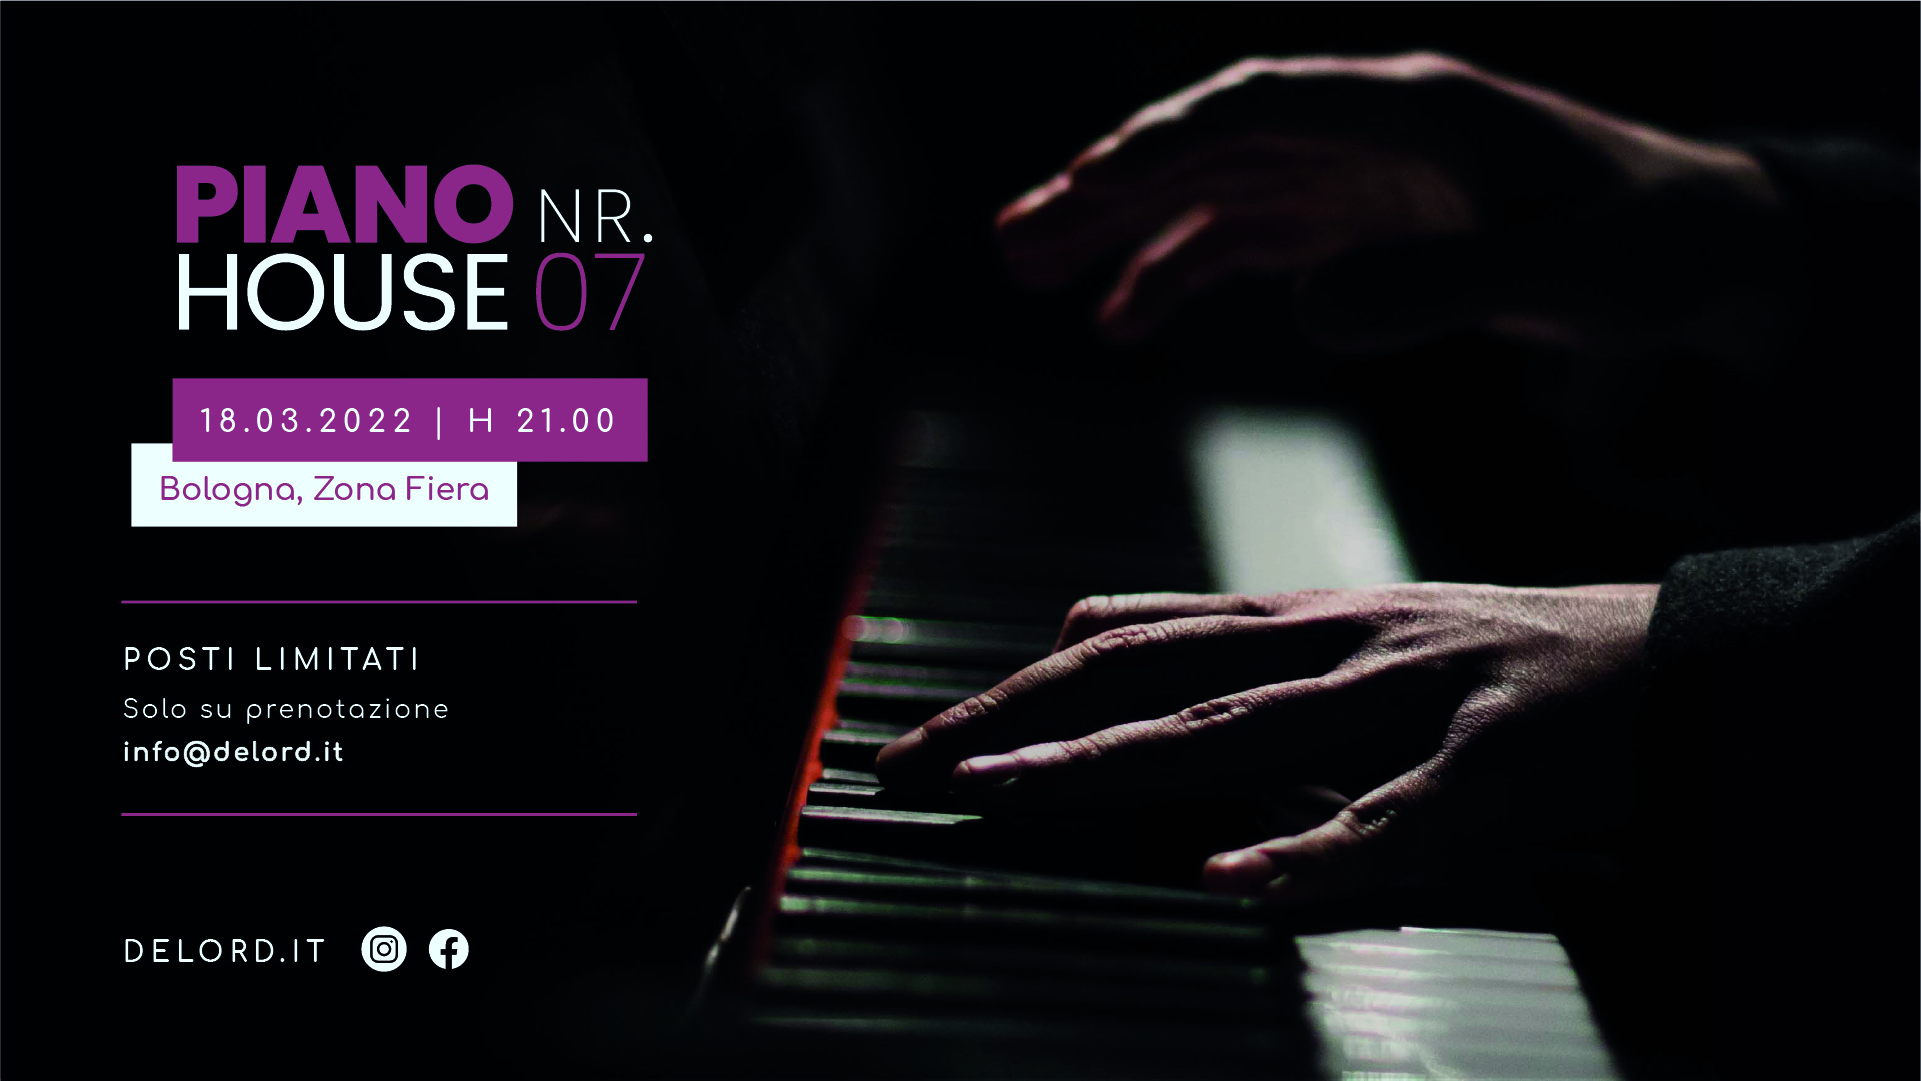 Pianohouse bologna: concerto pianoforte per musica meditazione